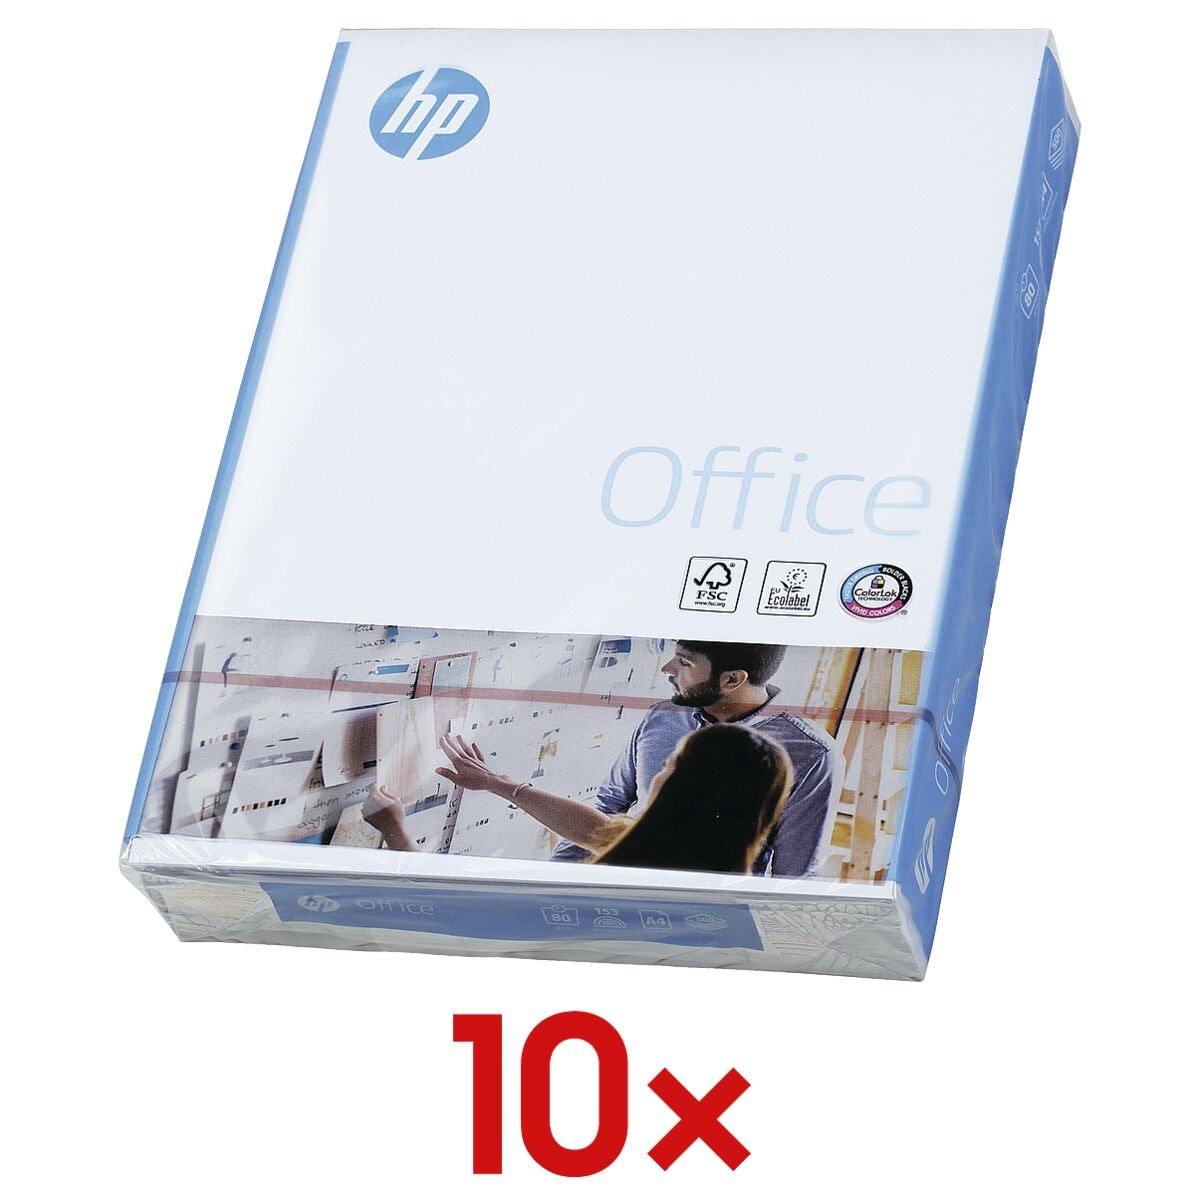 10x Multifunctioneel papier A4 HP Office - 5000 bladen (totaal), 80g/qm